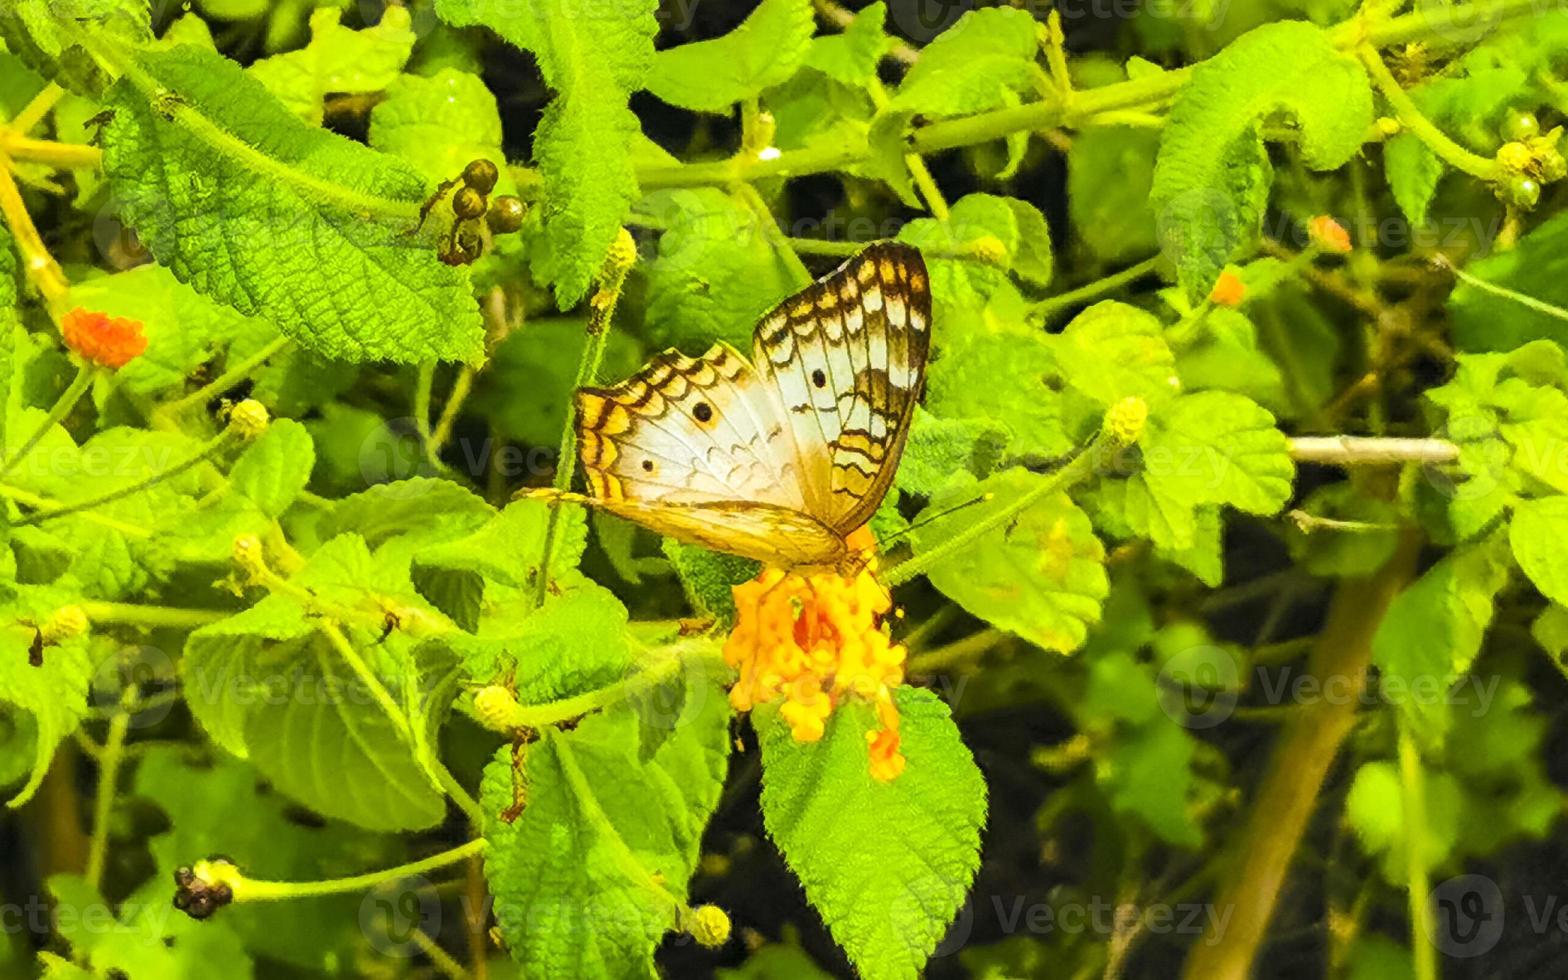 tropische vlinder op bloem plant in bos en natuur mexico. foto